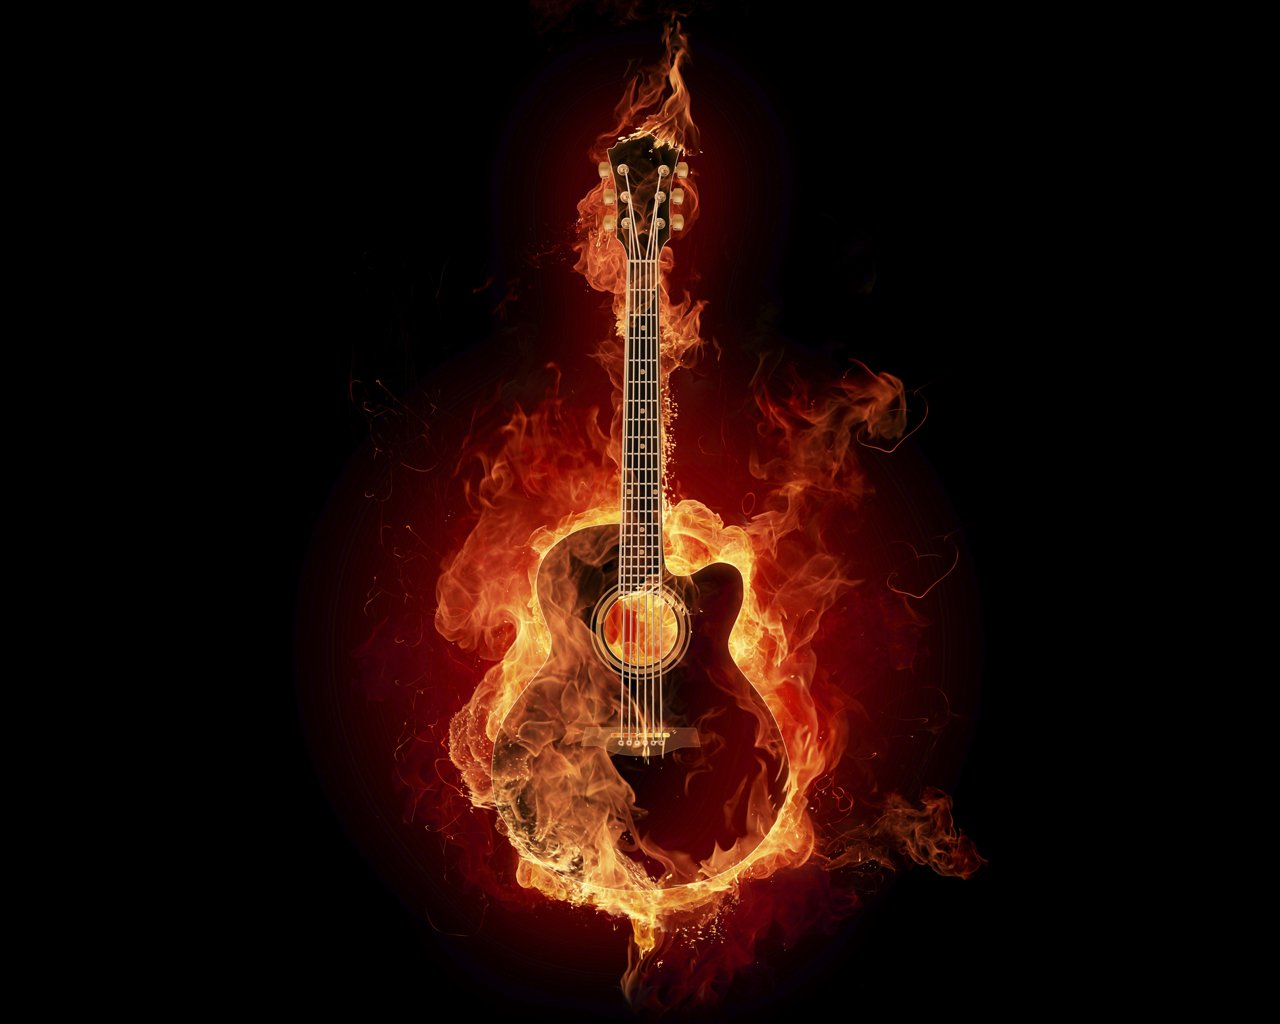 feu papier peint,guitare,instruments à cordes pincées,instrument de musique,flamme,guitariste